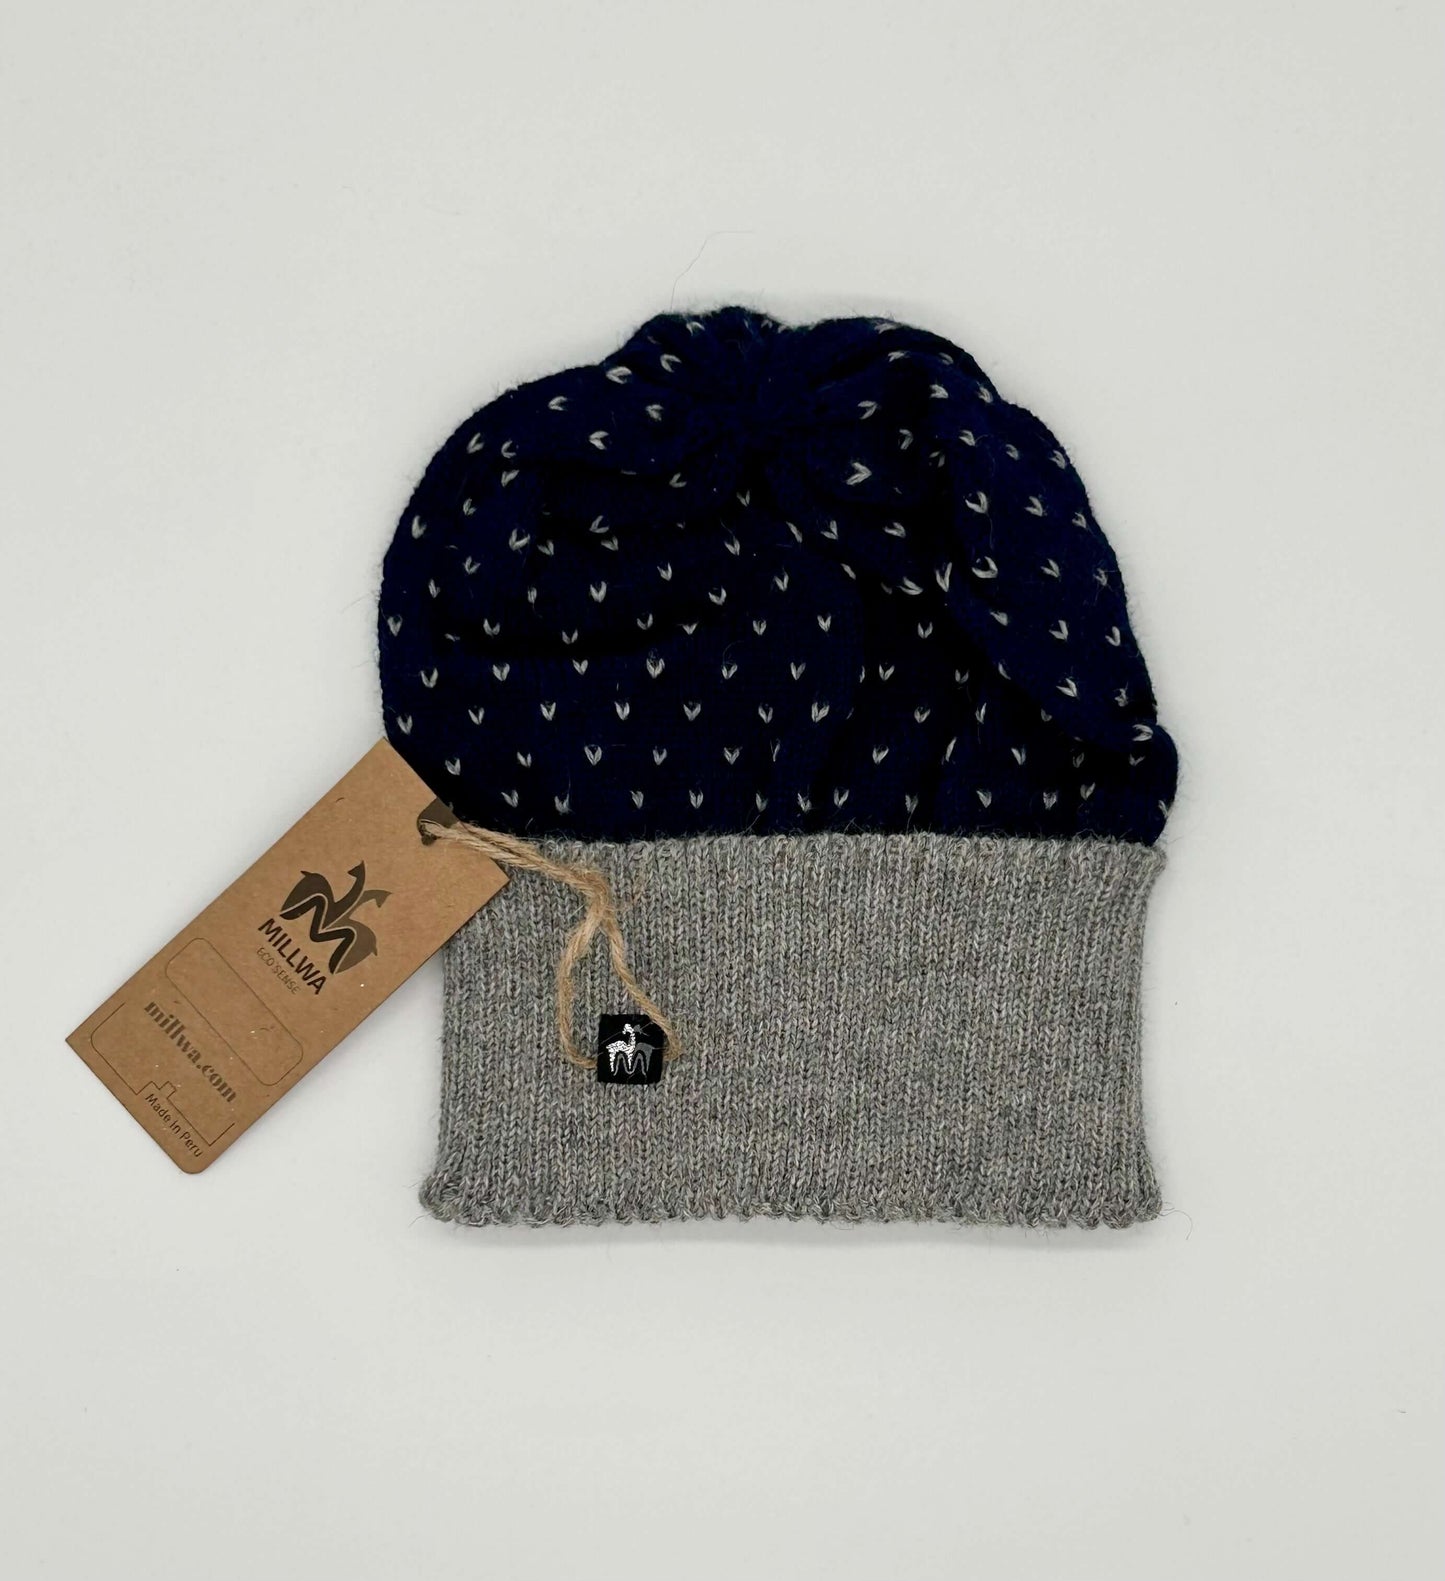 Kuschelweiche Mütze aus 100% Baby-Alpakawolle | Vielfältige Designs in Grau, Weiß, und Navy & Warm durch kalte Tage